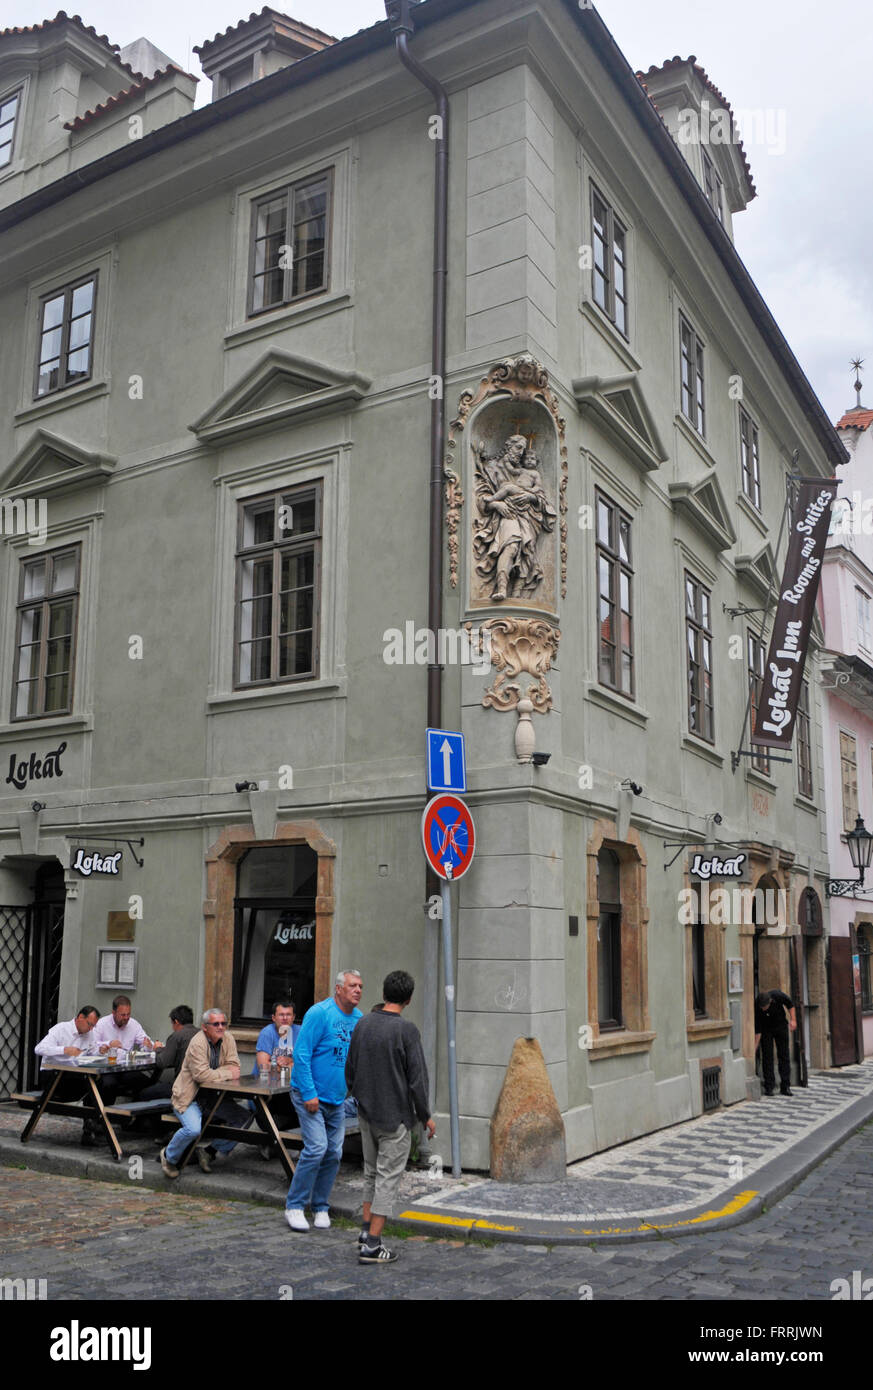 El Lokal Cafe Restaurant , distrito de Kampa, casco antiguo de Praga, República Checa Foto de stock